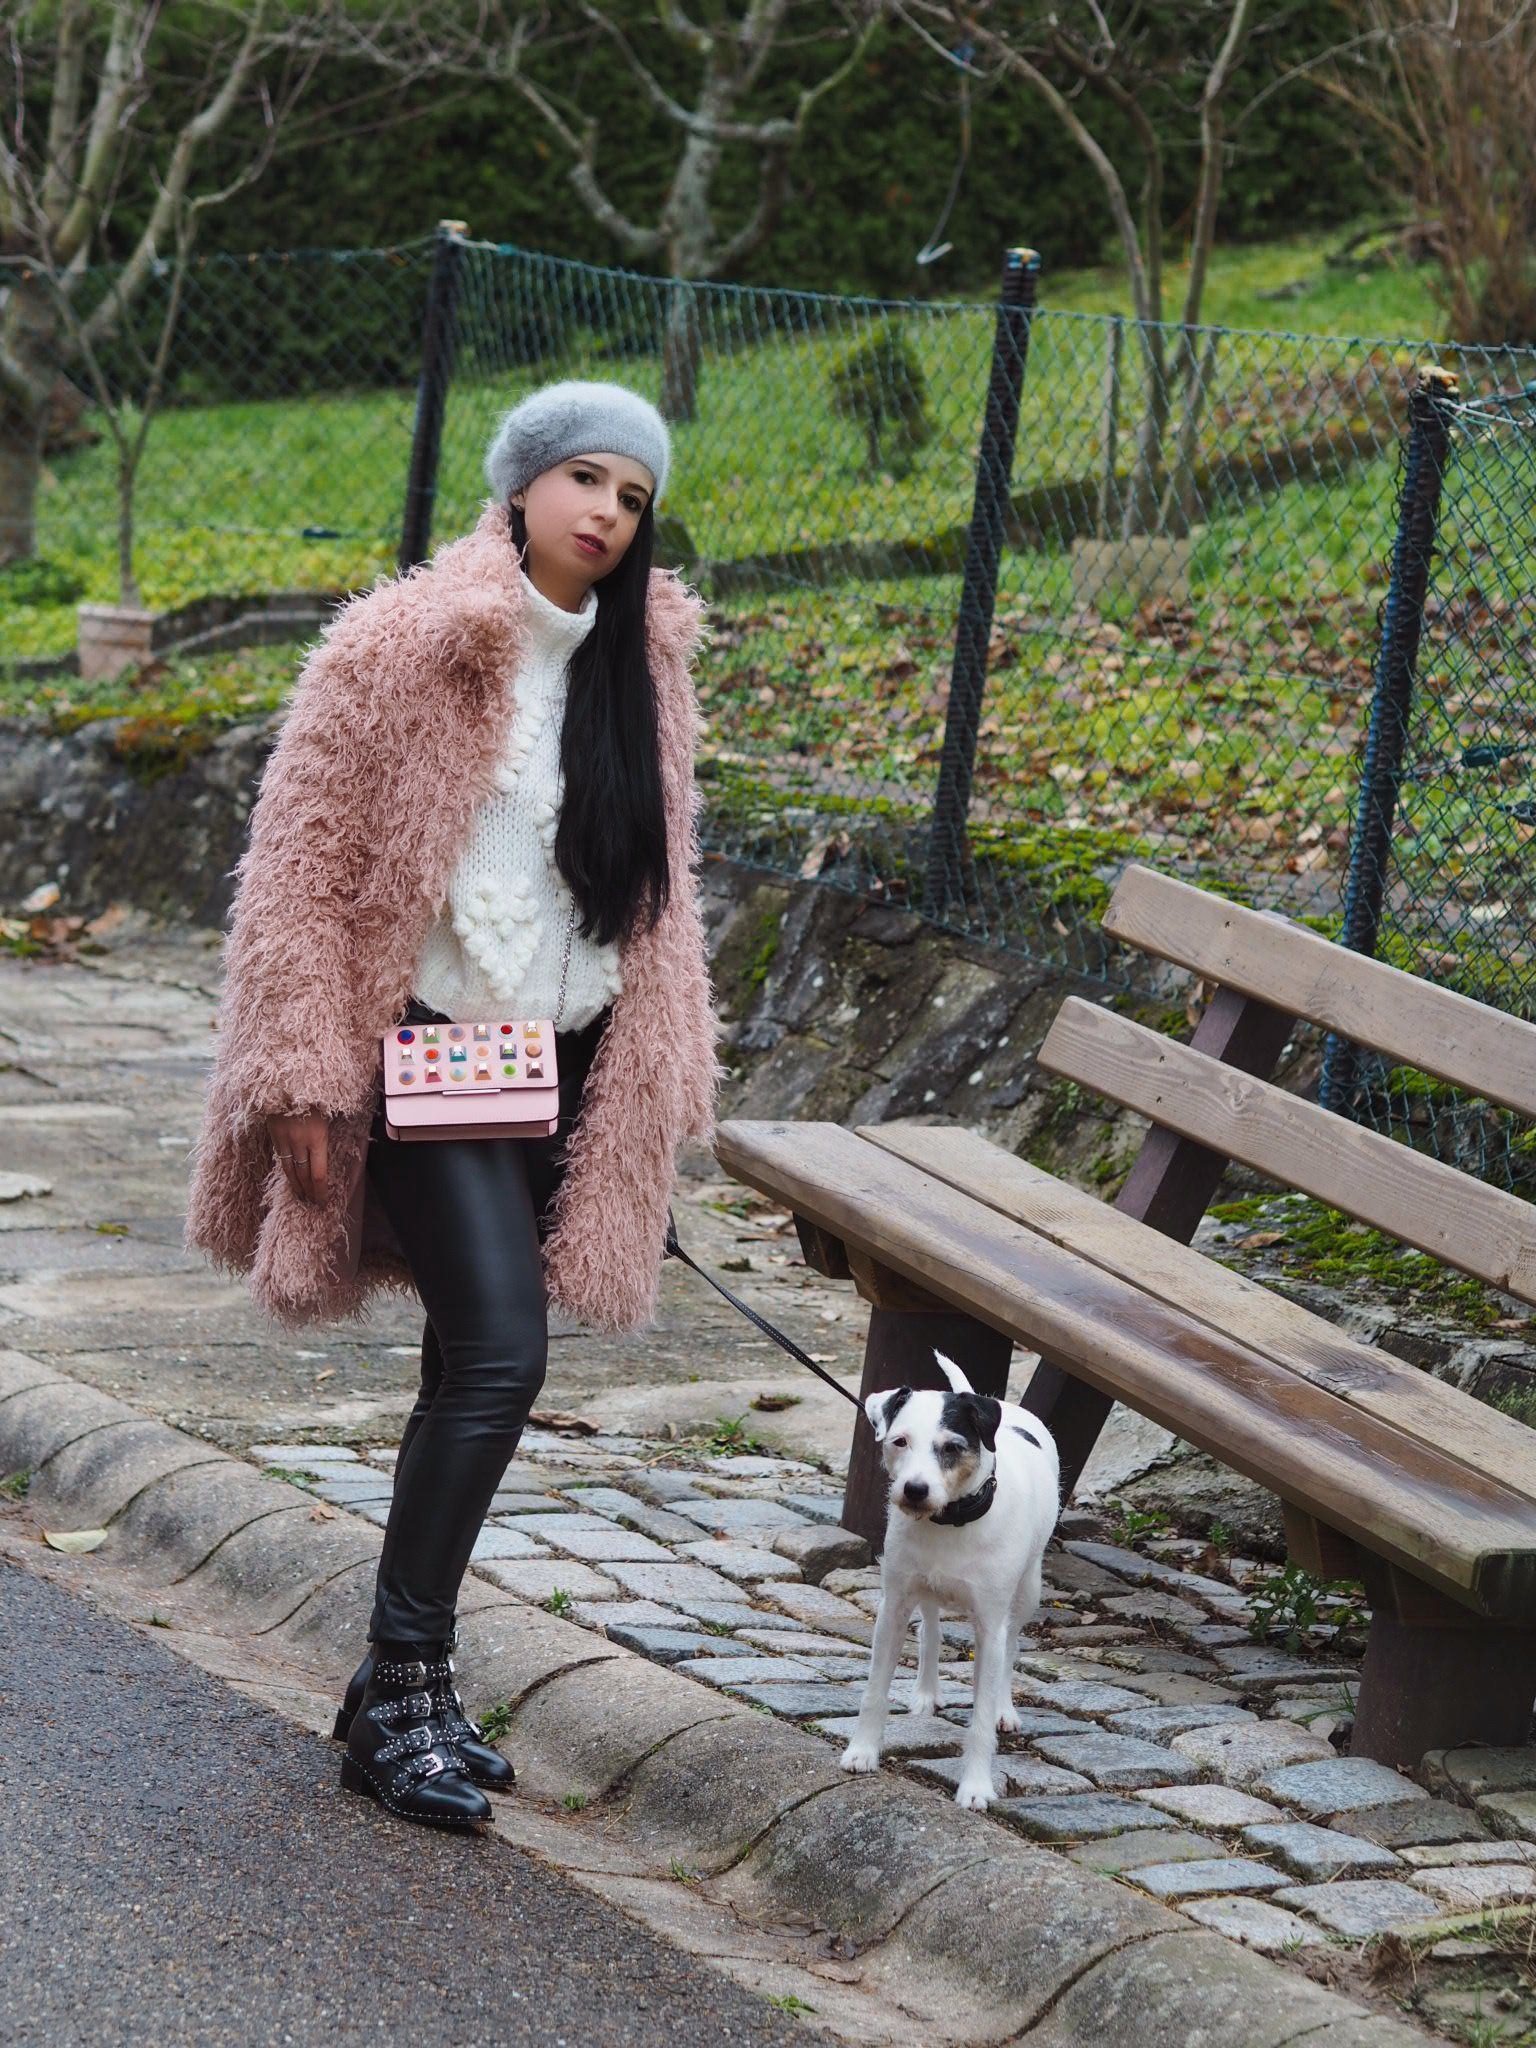 Heute zeige ich euch auf meinem Blog, dass der im Winter warm eingepackte Yeti-Look im XXL Oversize Mantel durchaus modisch und up to date aussehen kann